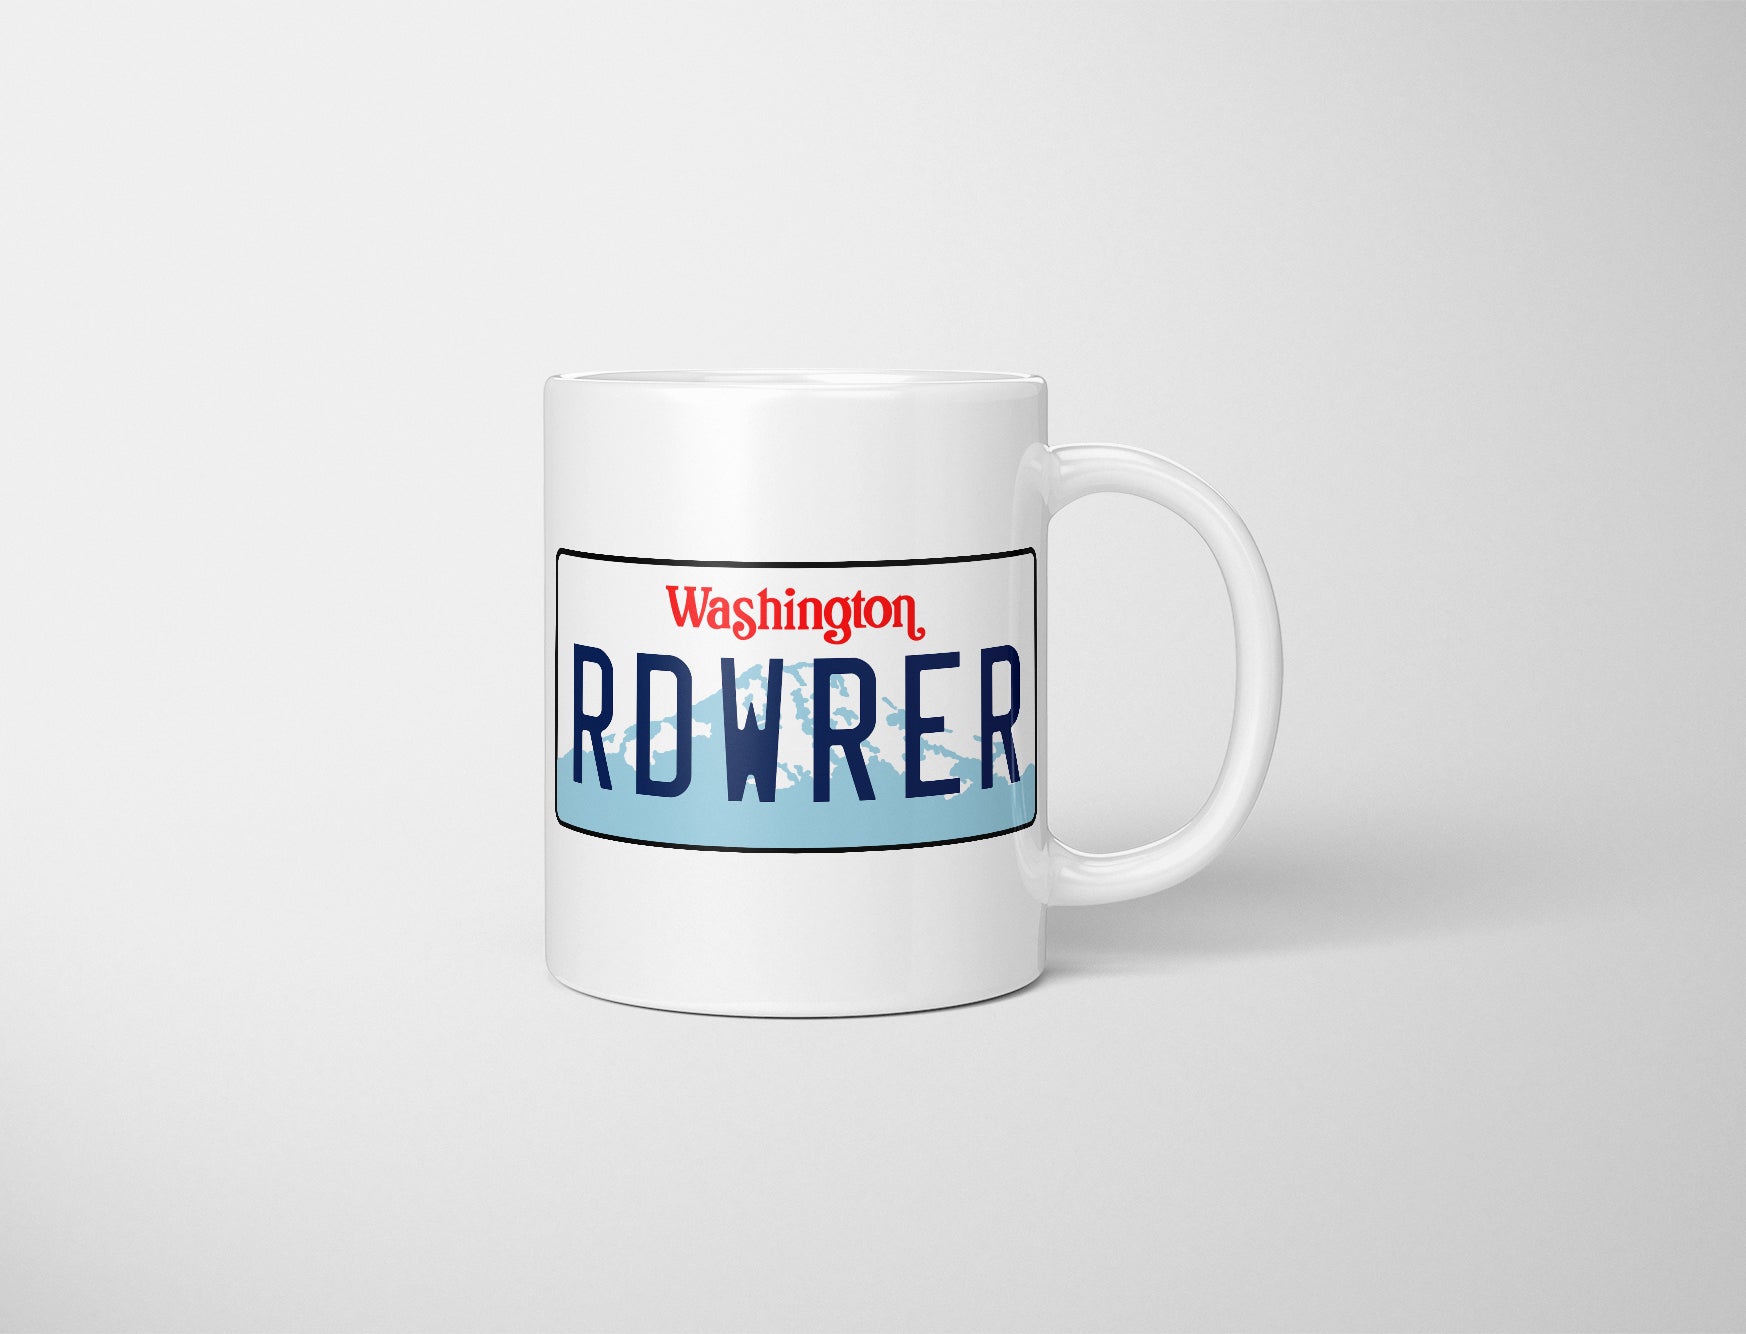 RDWRER, RDWRER License Plate Mug, Road Warrior, Martin Crane, Frasier Gift, Frasier Fan Mug, Frasier Fan Gift, Frasier Mug, Frasier Crane